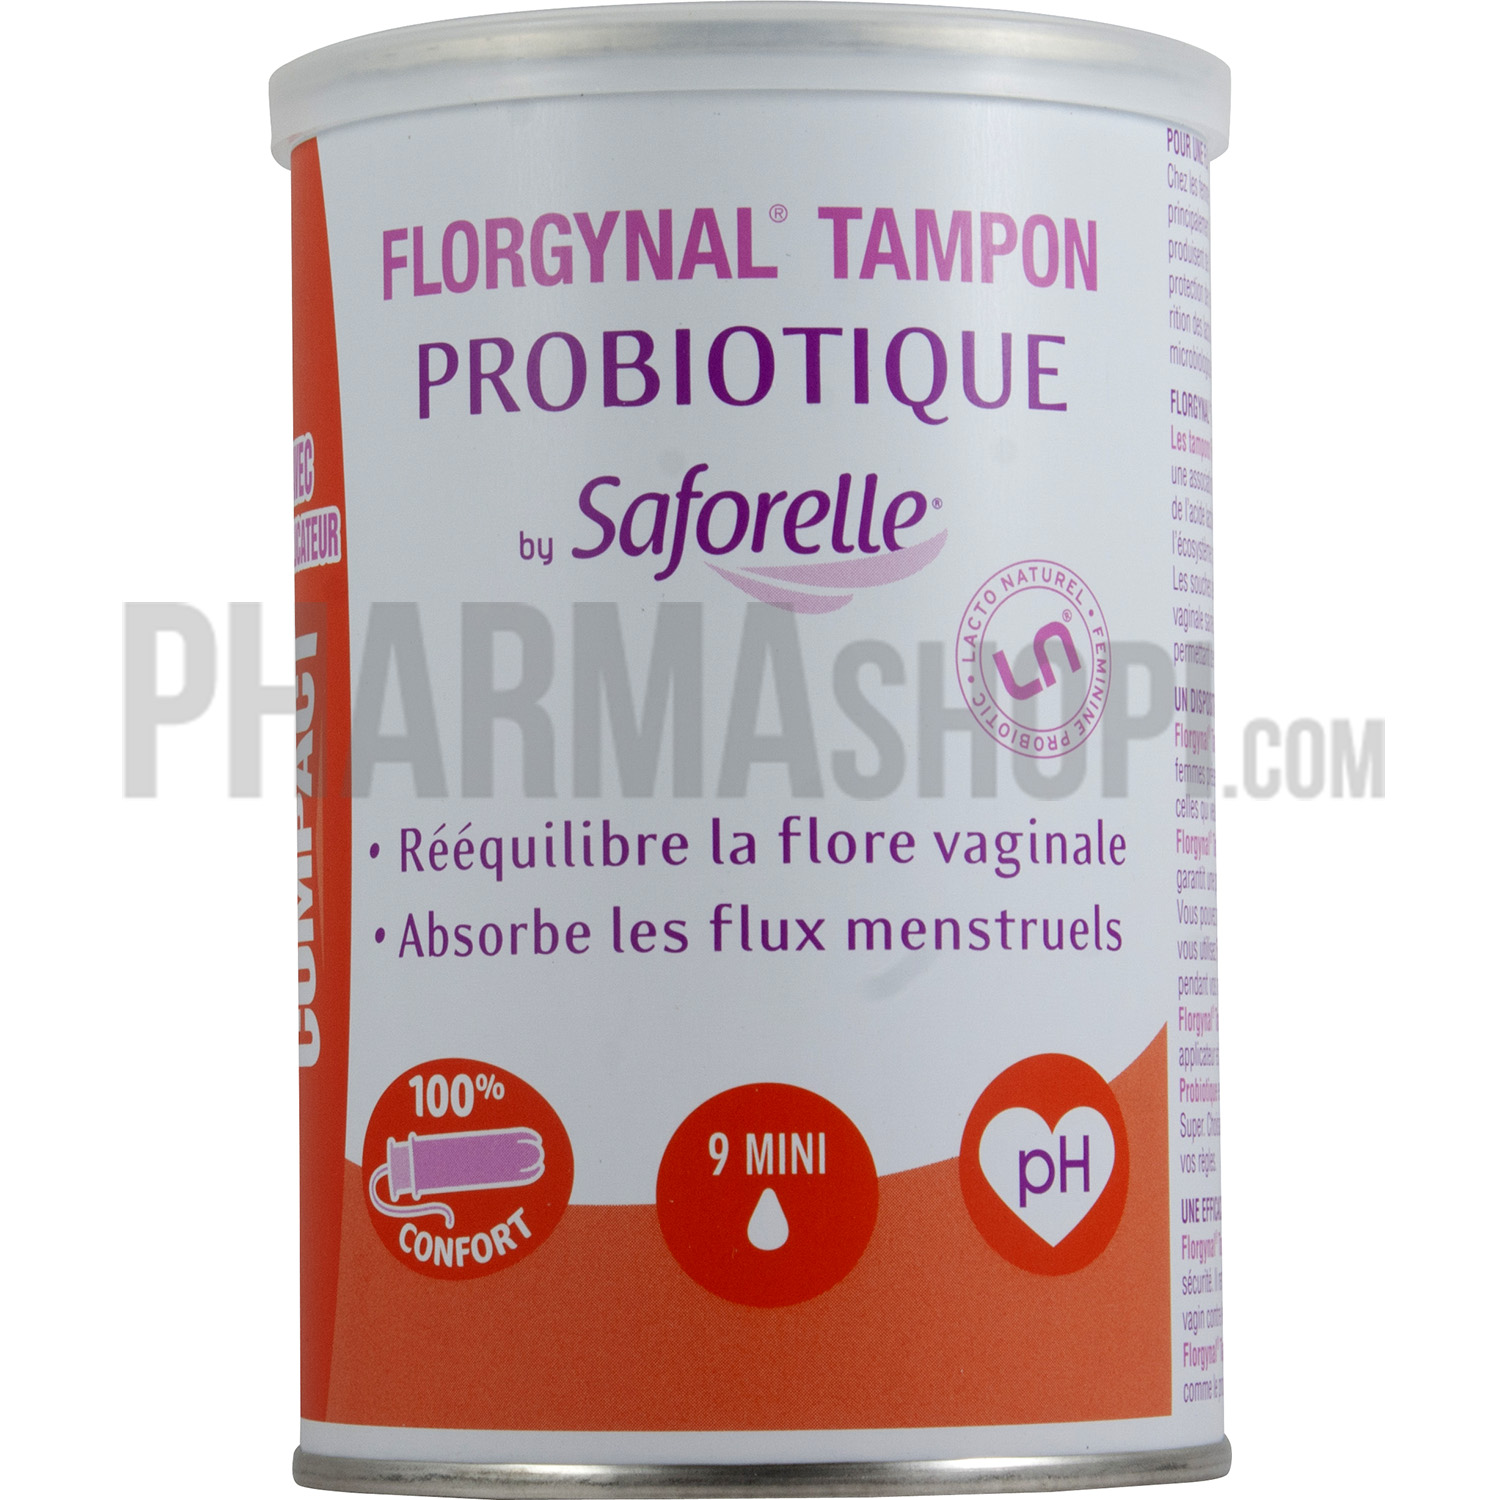 Florgynal tampon probiotique mini avec applicateur Saforelle - boite de 9 tampons